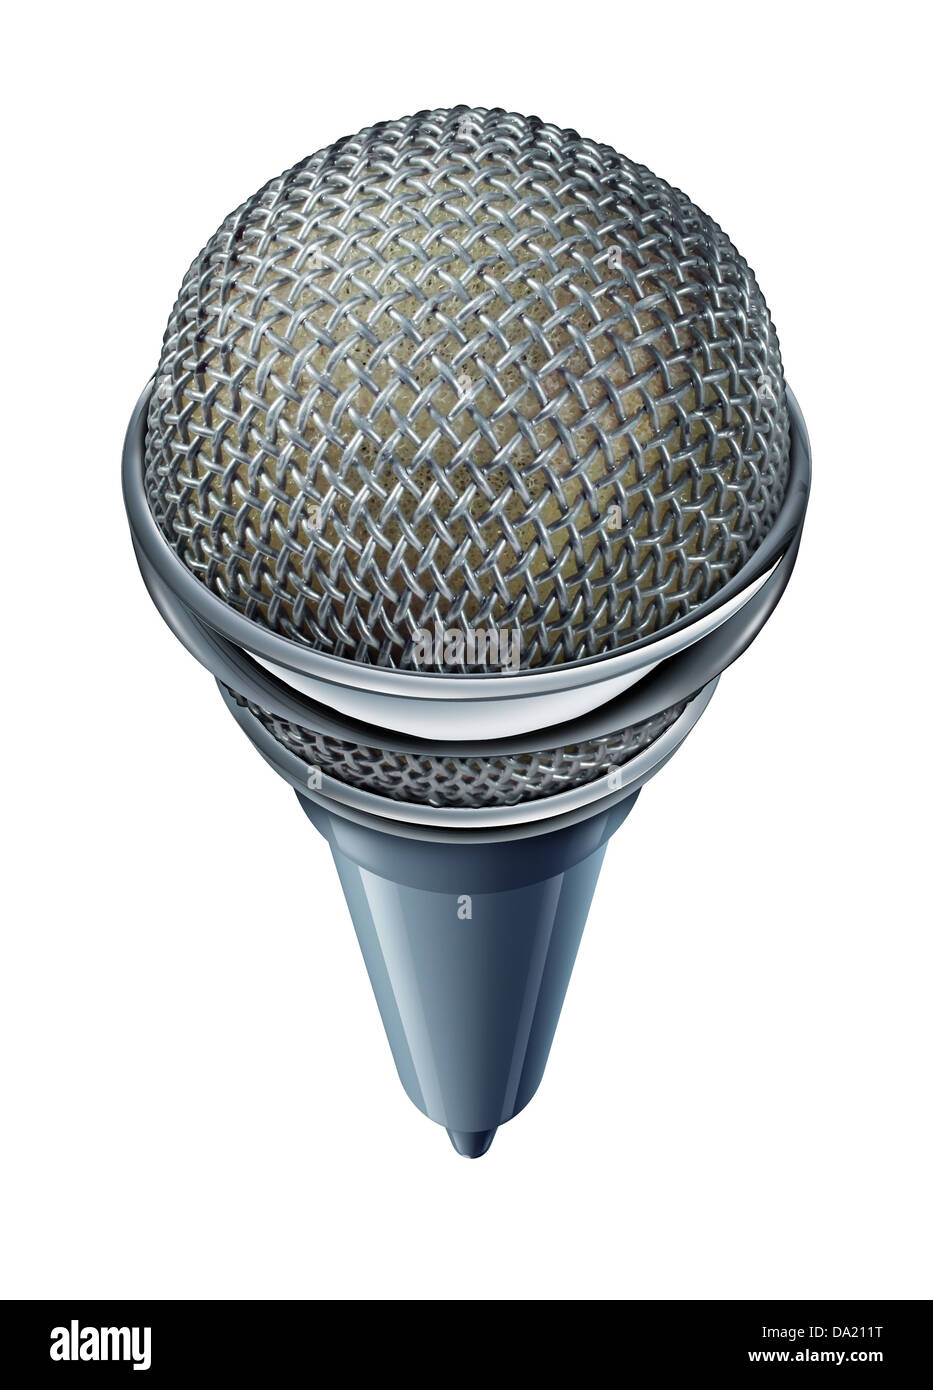 Mikrofon oder Mikrofon isoliert auf einem weißen Hintergrund als Symbol für Unterhaltung und Kommunikation während einer Show oder einem Seminar mit sound-Equipment in einer Frontalansicht und erzwungene Perspektive. Stockfoto